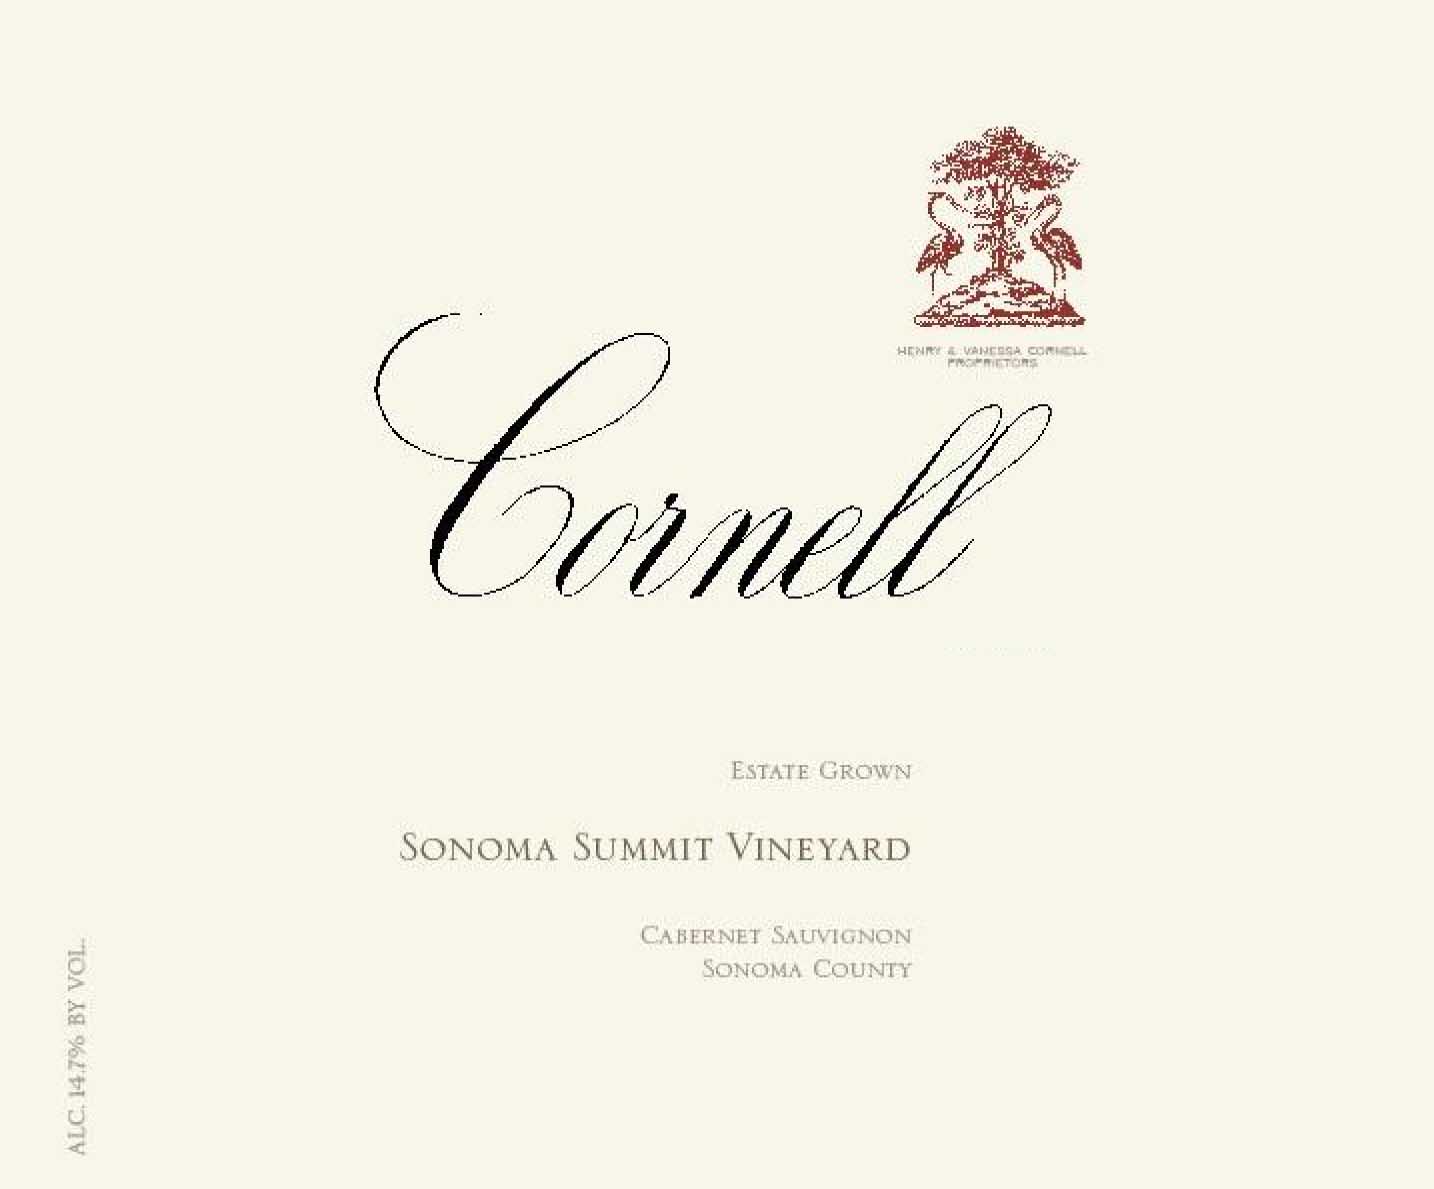 Cornell - Cabernet Sauvignon - Estate Grown label